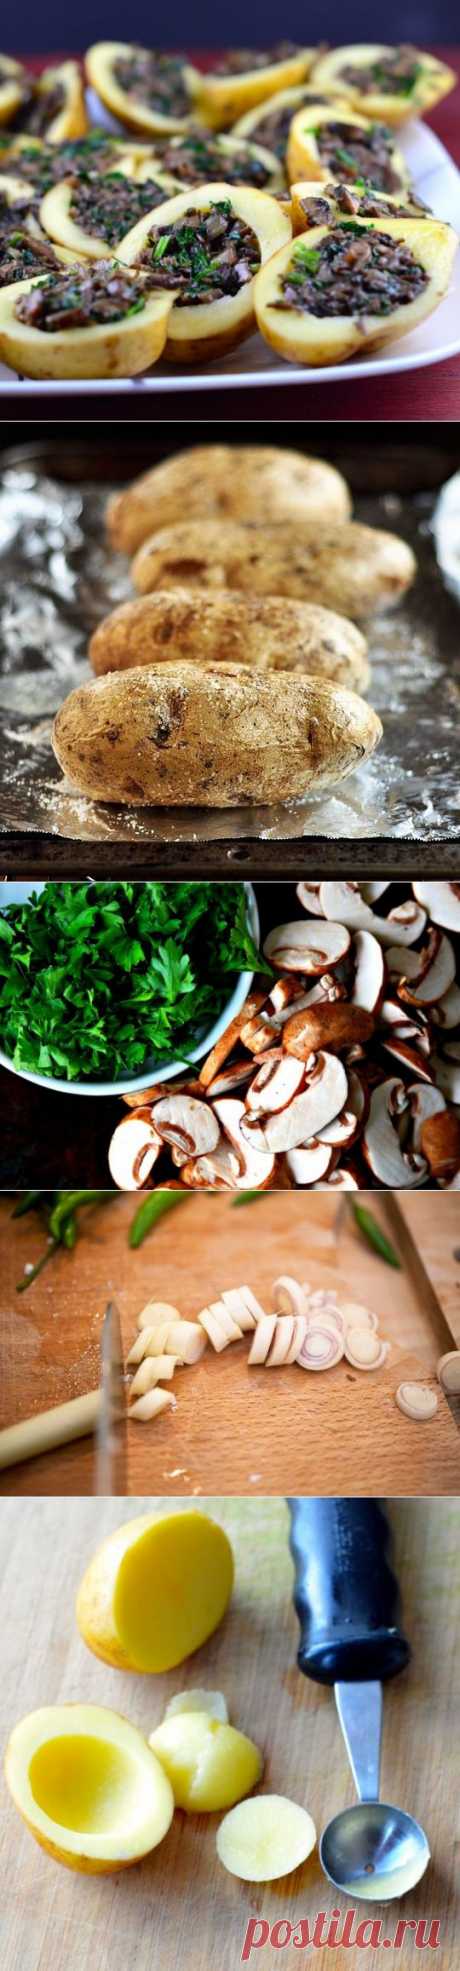 Как приготовить картошка запеченная с грибами в духовке - рецепт, ингридиенты и фотографии